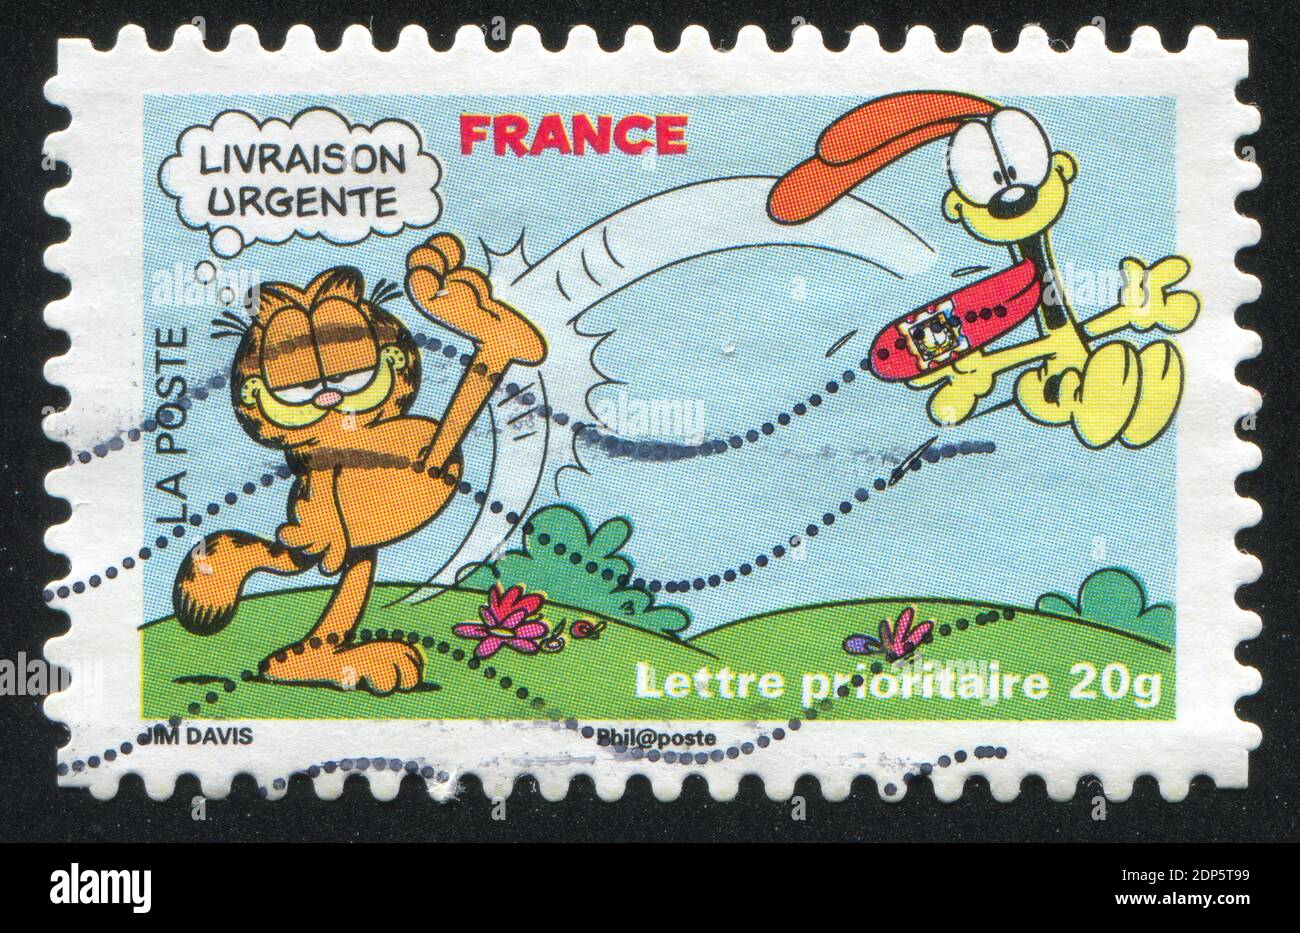 FRANCIA - CIRCA 2008: Francobollo stampato dalla Francia, spettacoli Garfield, circa 2008 Foto Stock